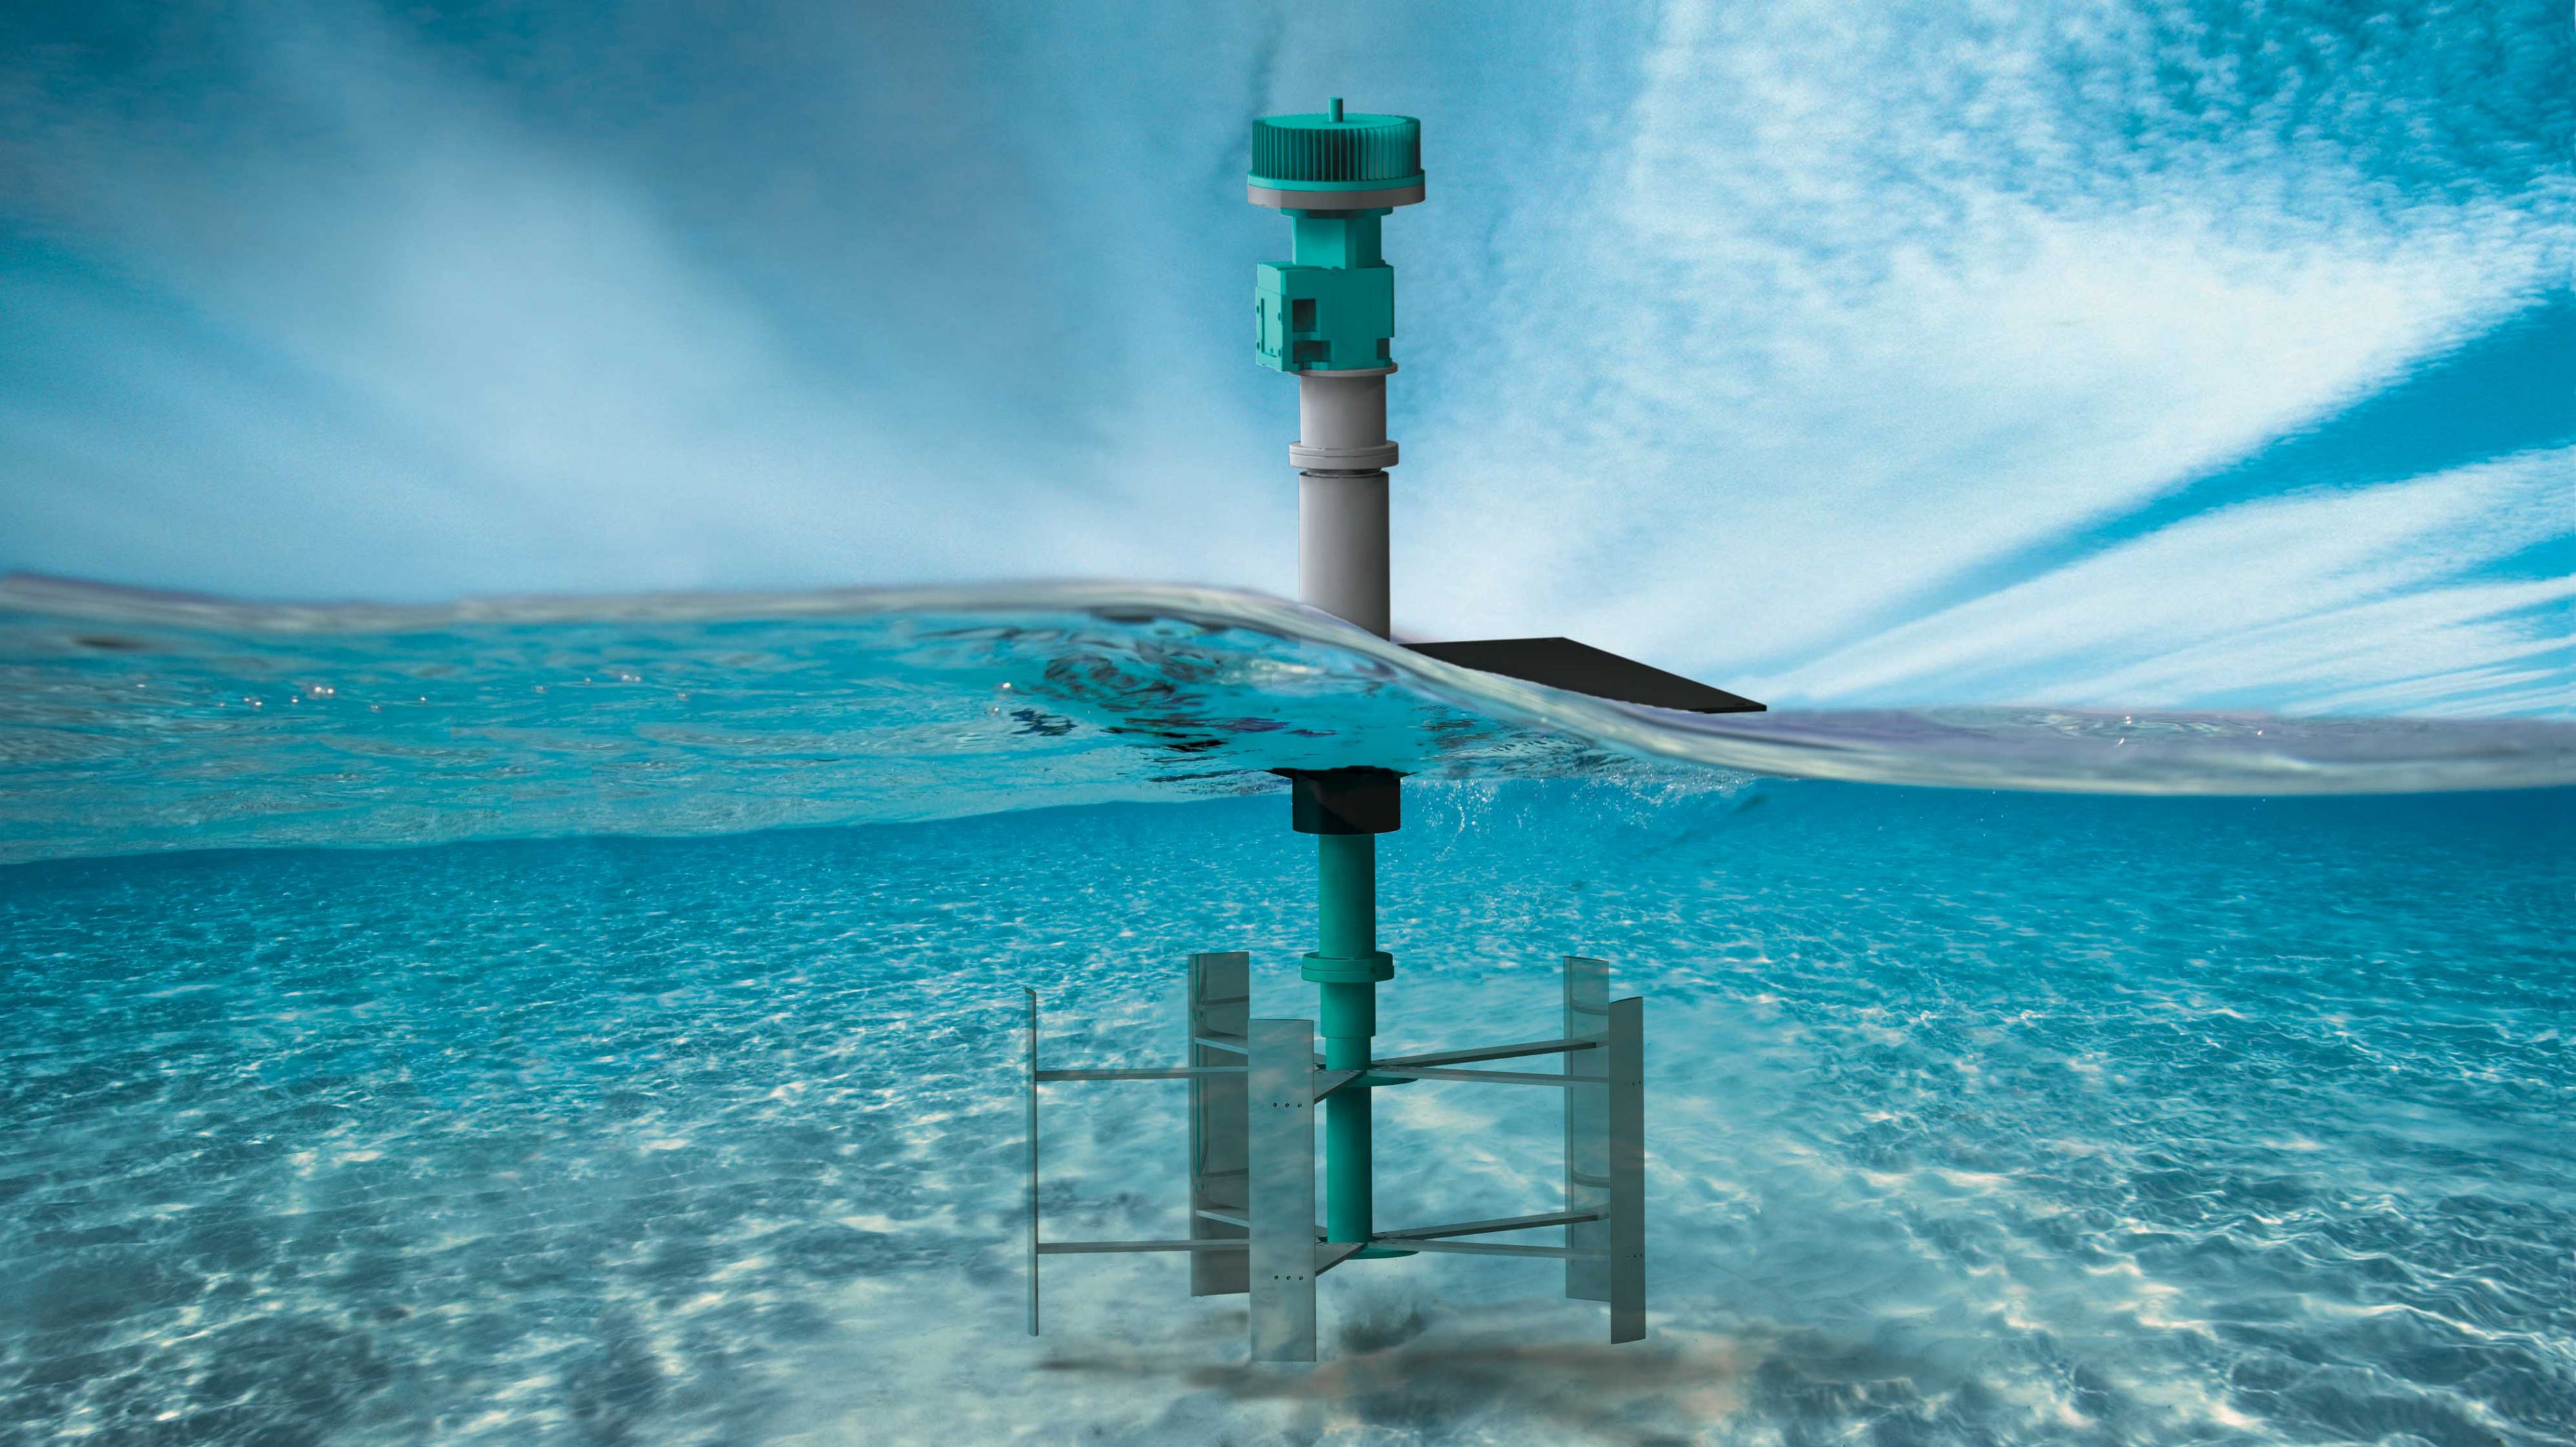 Image de synthèse d’une turbine d’énergie hydrocinétique fluviale, illustrant la partie immergée et celle hors de l’eau.